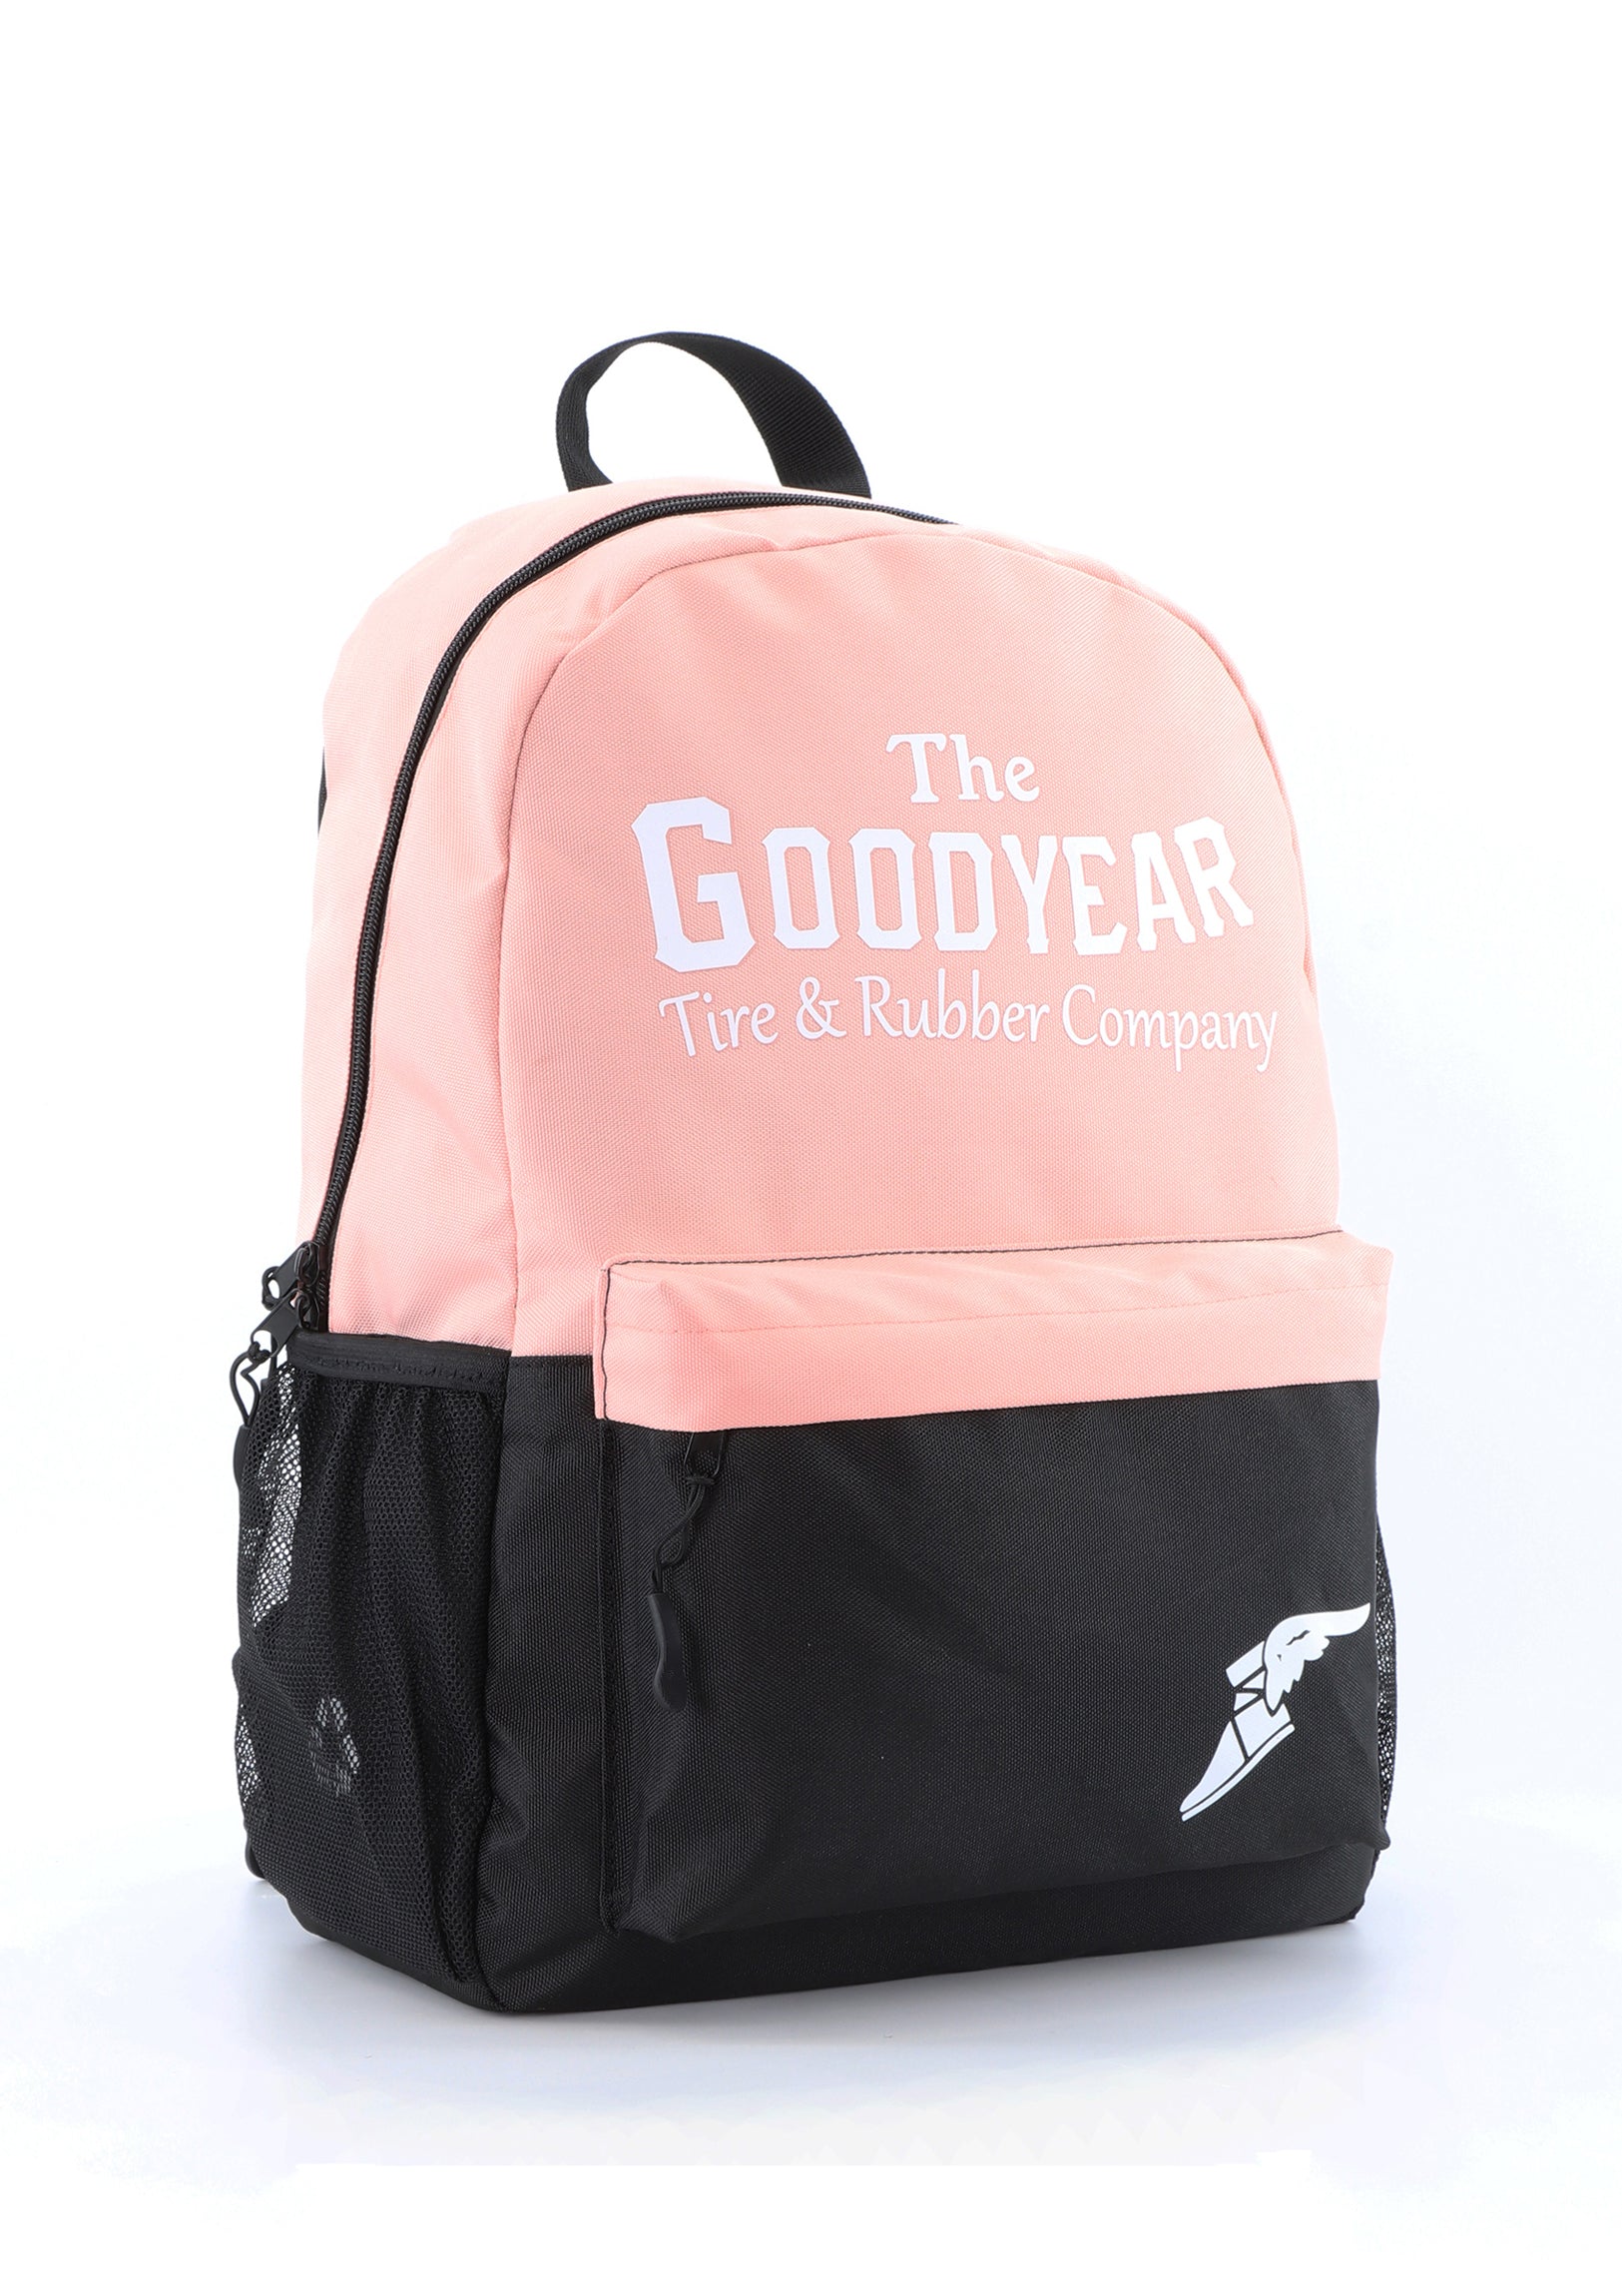 Goodyear backpack 